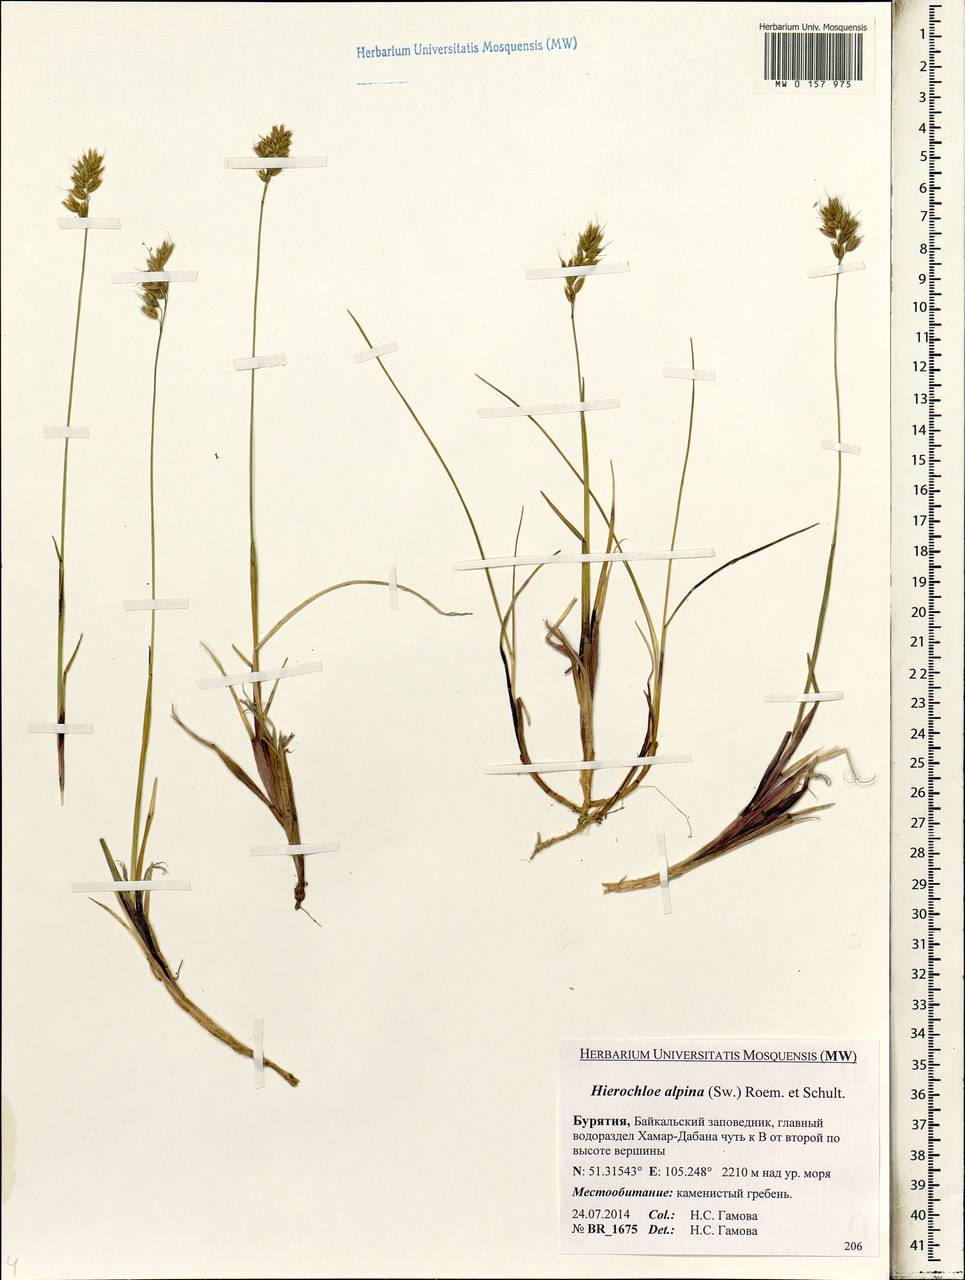 Anthoxanthum monticola (Bigelow) Veldkamp, Сибирь, Прибайкалье и Забайкалье (S4) (Россия)